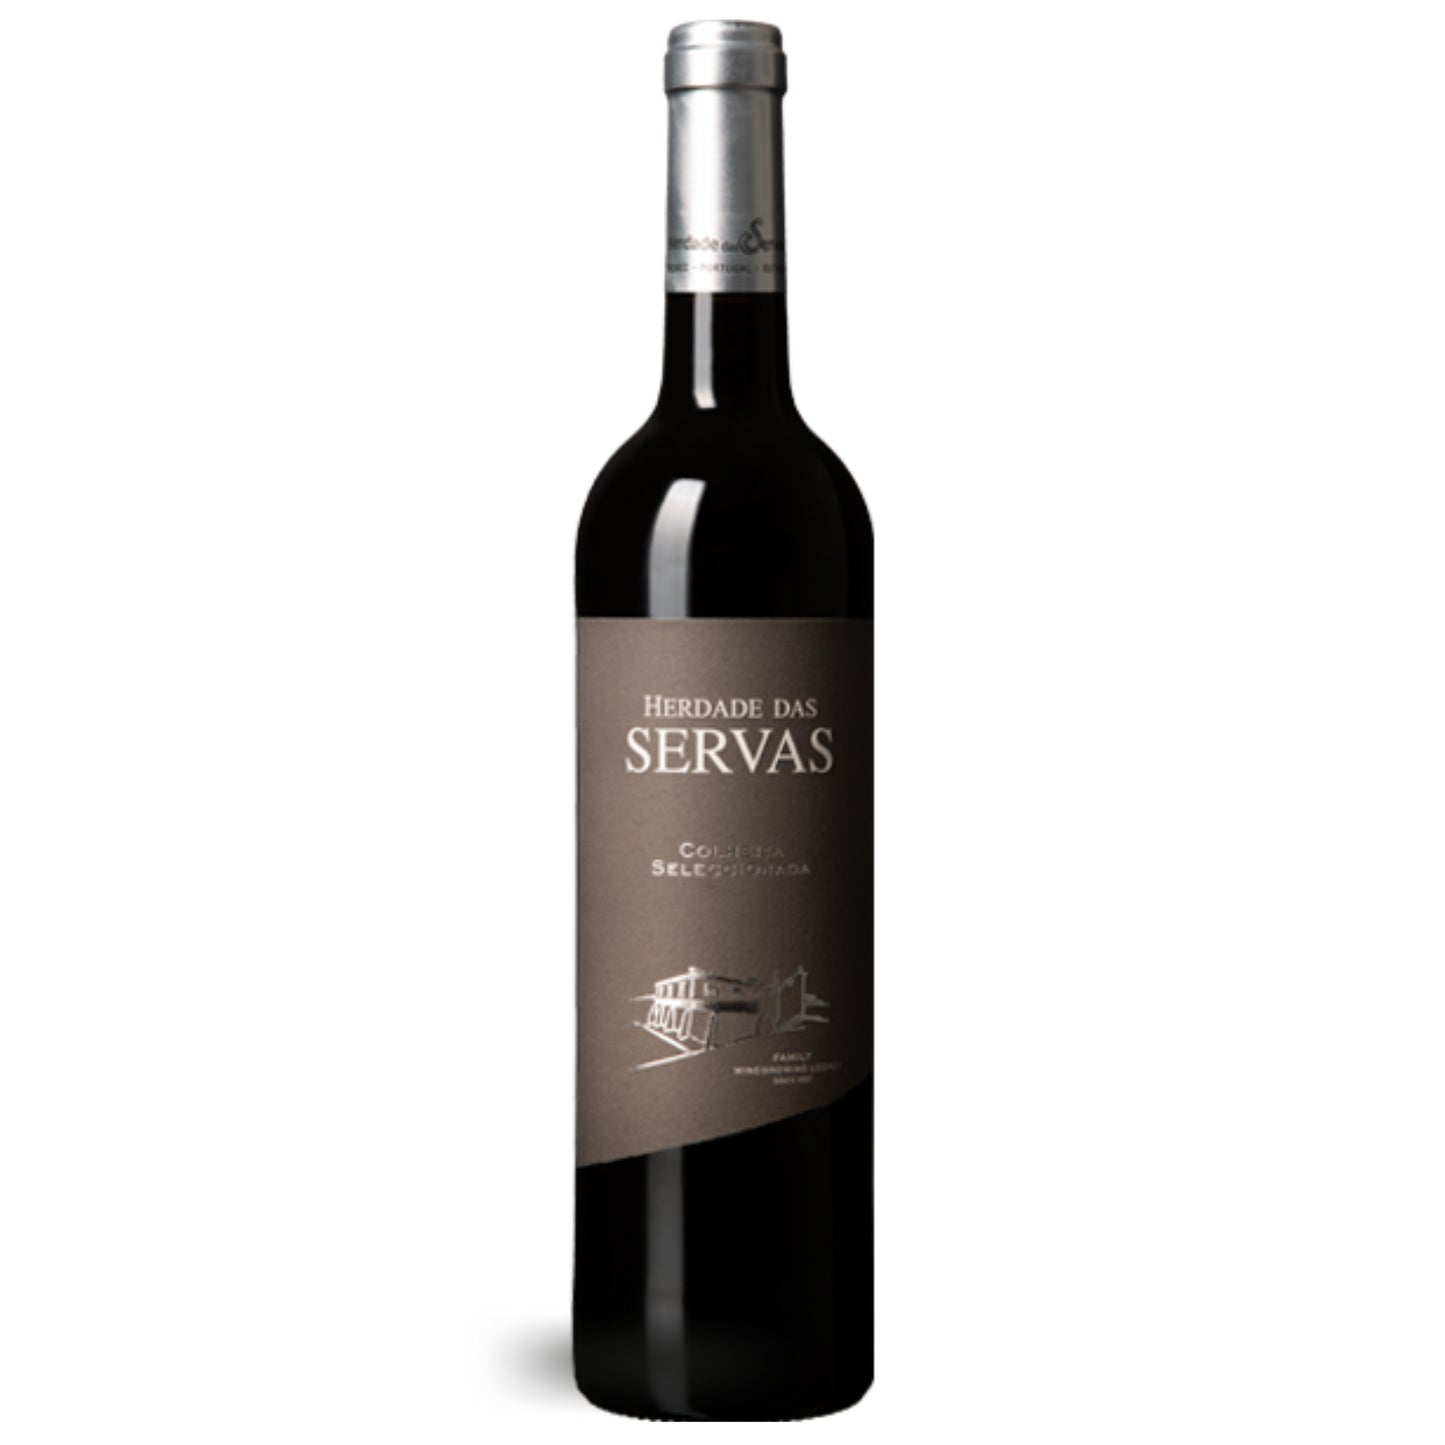 HERDADE DAS SERVAS COLHEITA SELECCIONADA: Rotwein vom Weingut Herdade das Servas aus der Region Estremoz – Alentejo/Portugal.